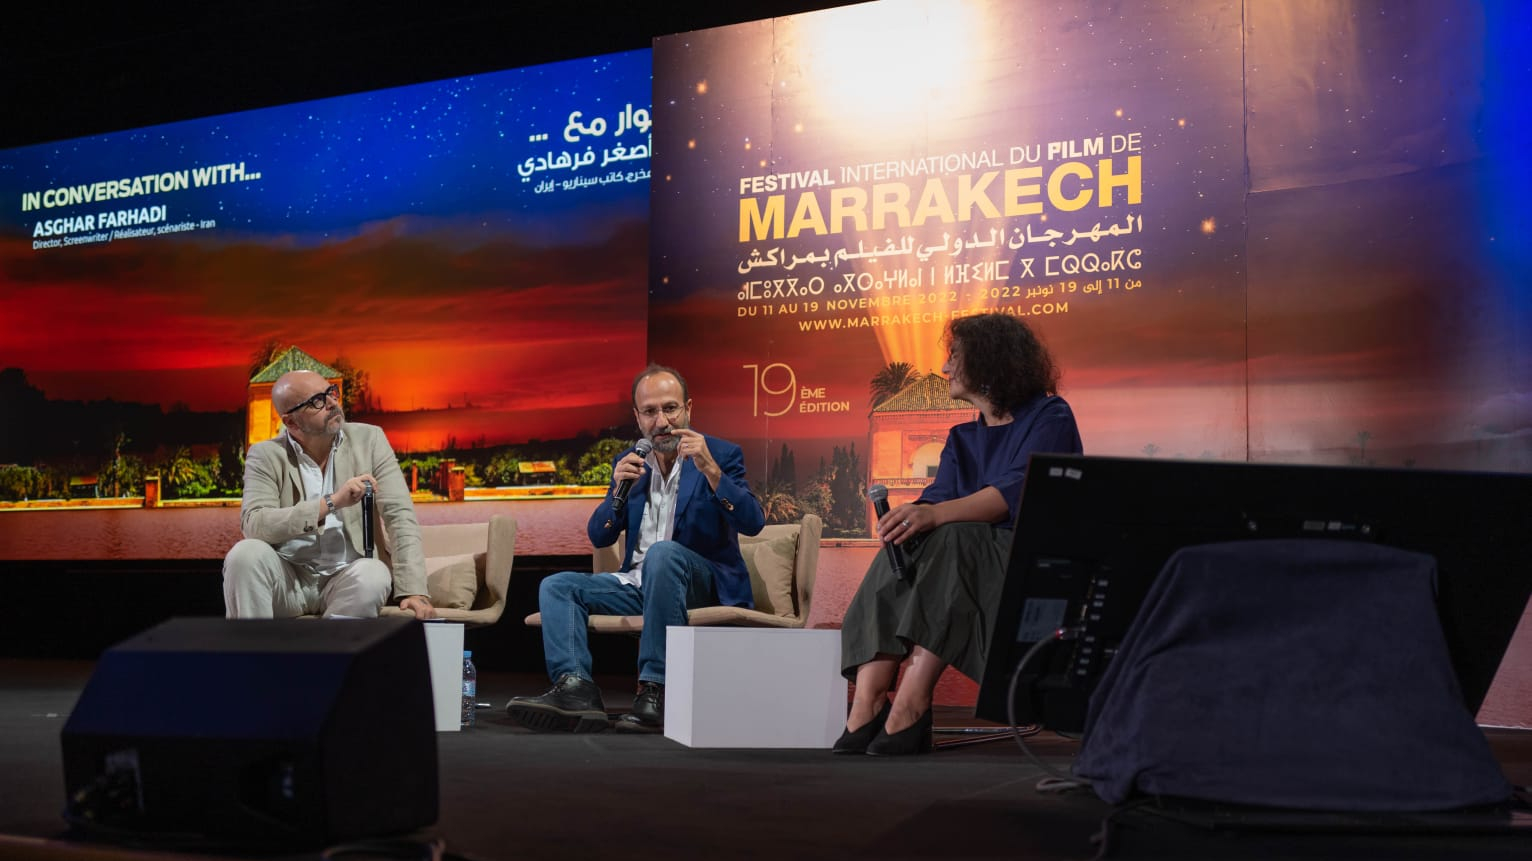 Le réalisateur iranien Asghar Farhadi, invité de la rencontre "In conversation with...", dans le cadre du Festival International du Film de Marrakech 2022, le 18 novembre.
